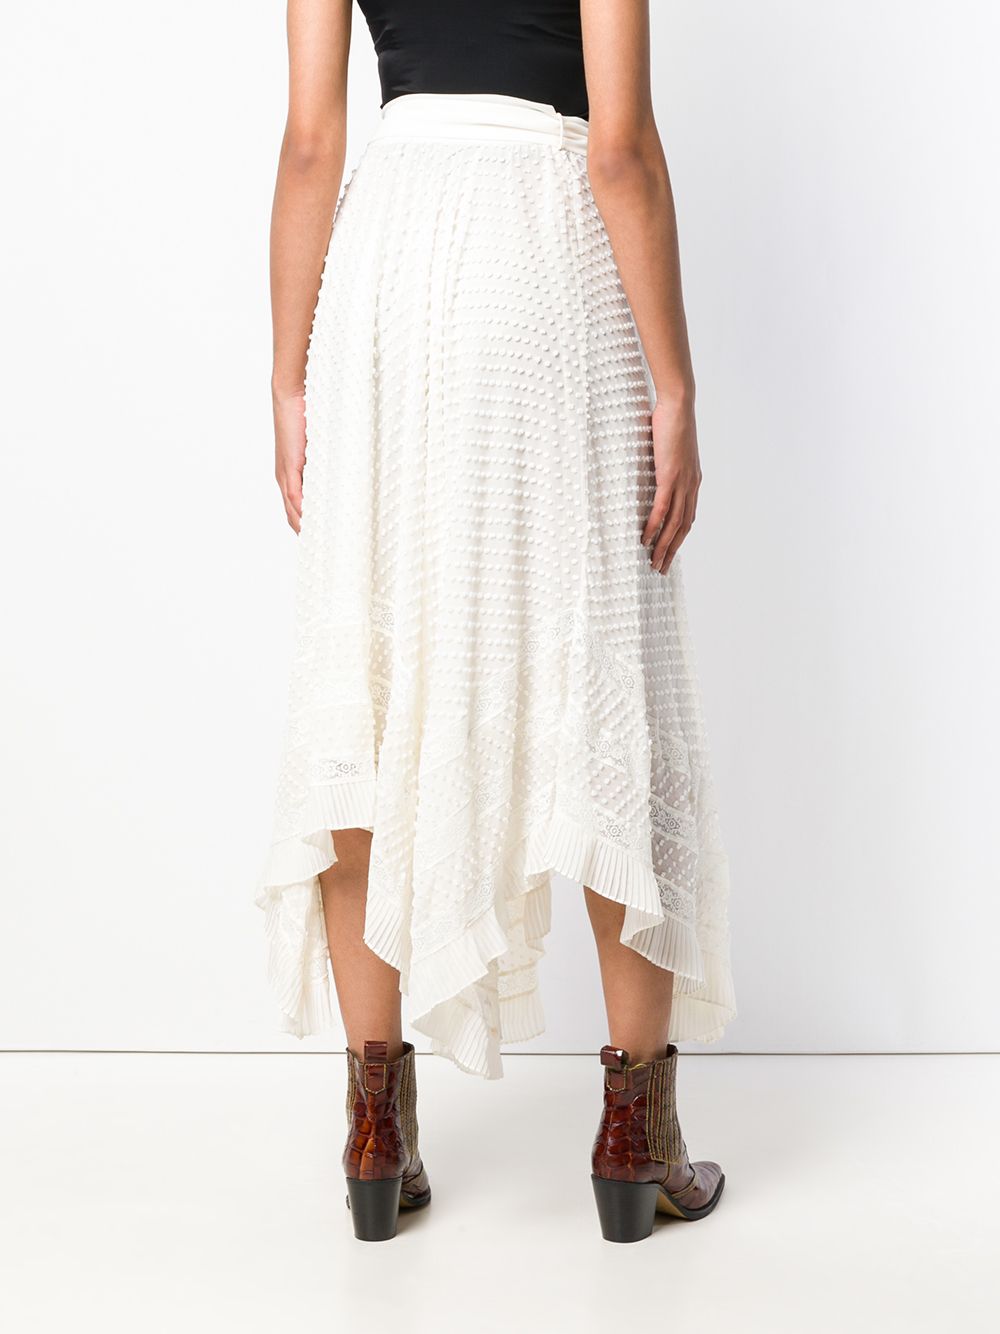 фото Zimmermann декорированная юбка асимметричного кроя